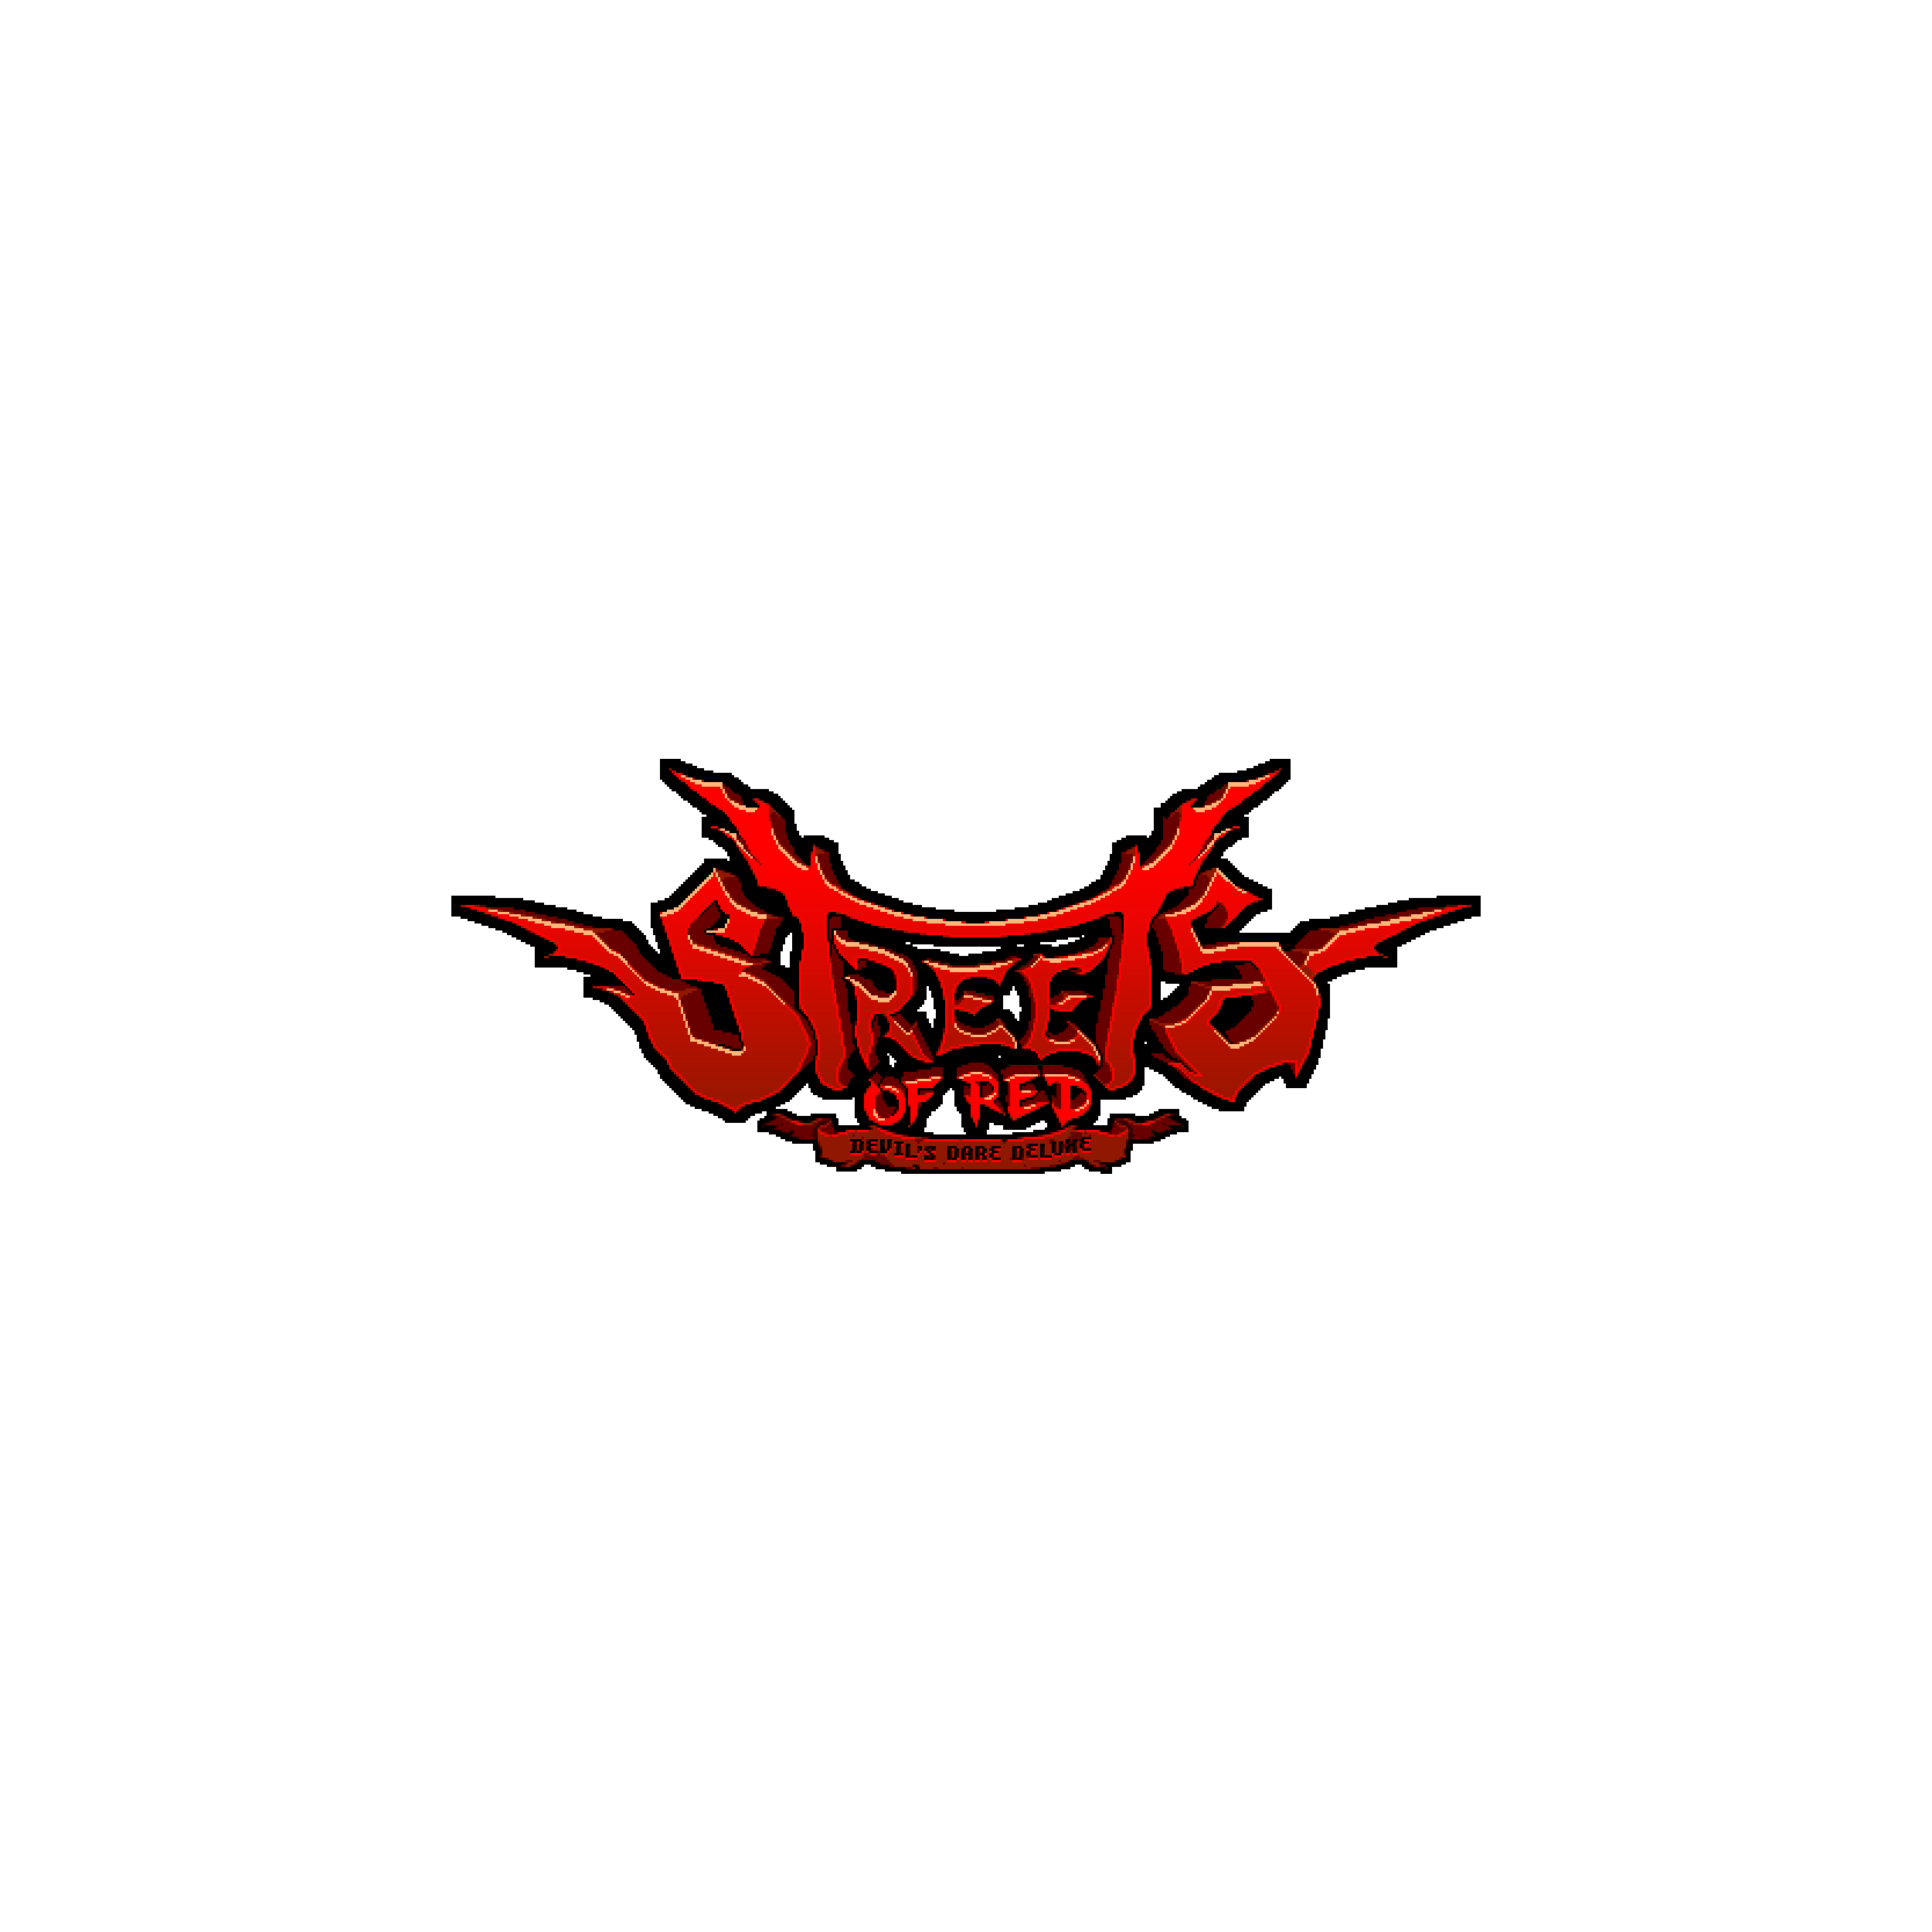 Streets of Red - Devil's Dare Deluxe logo